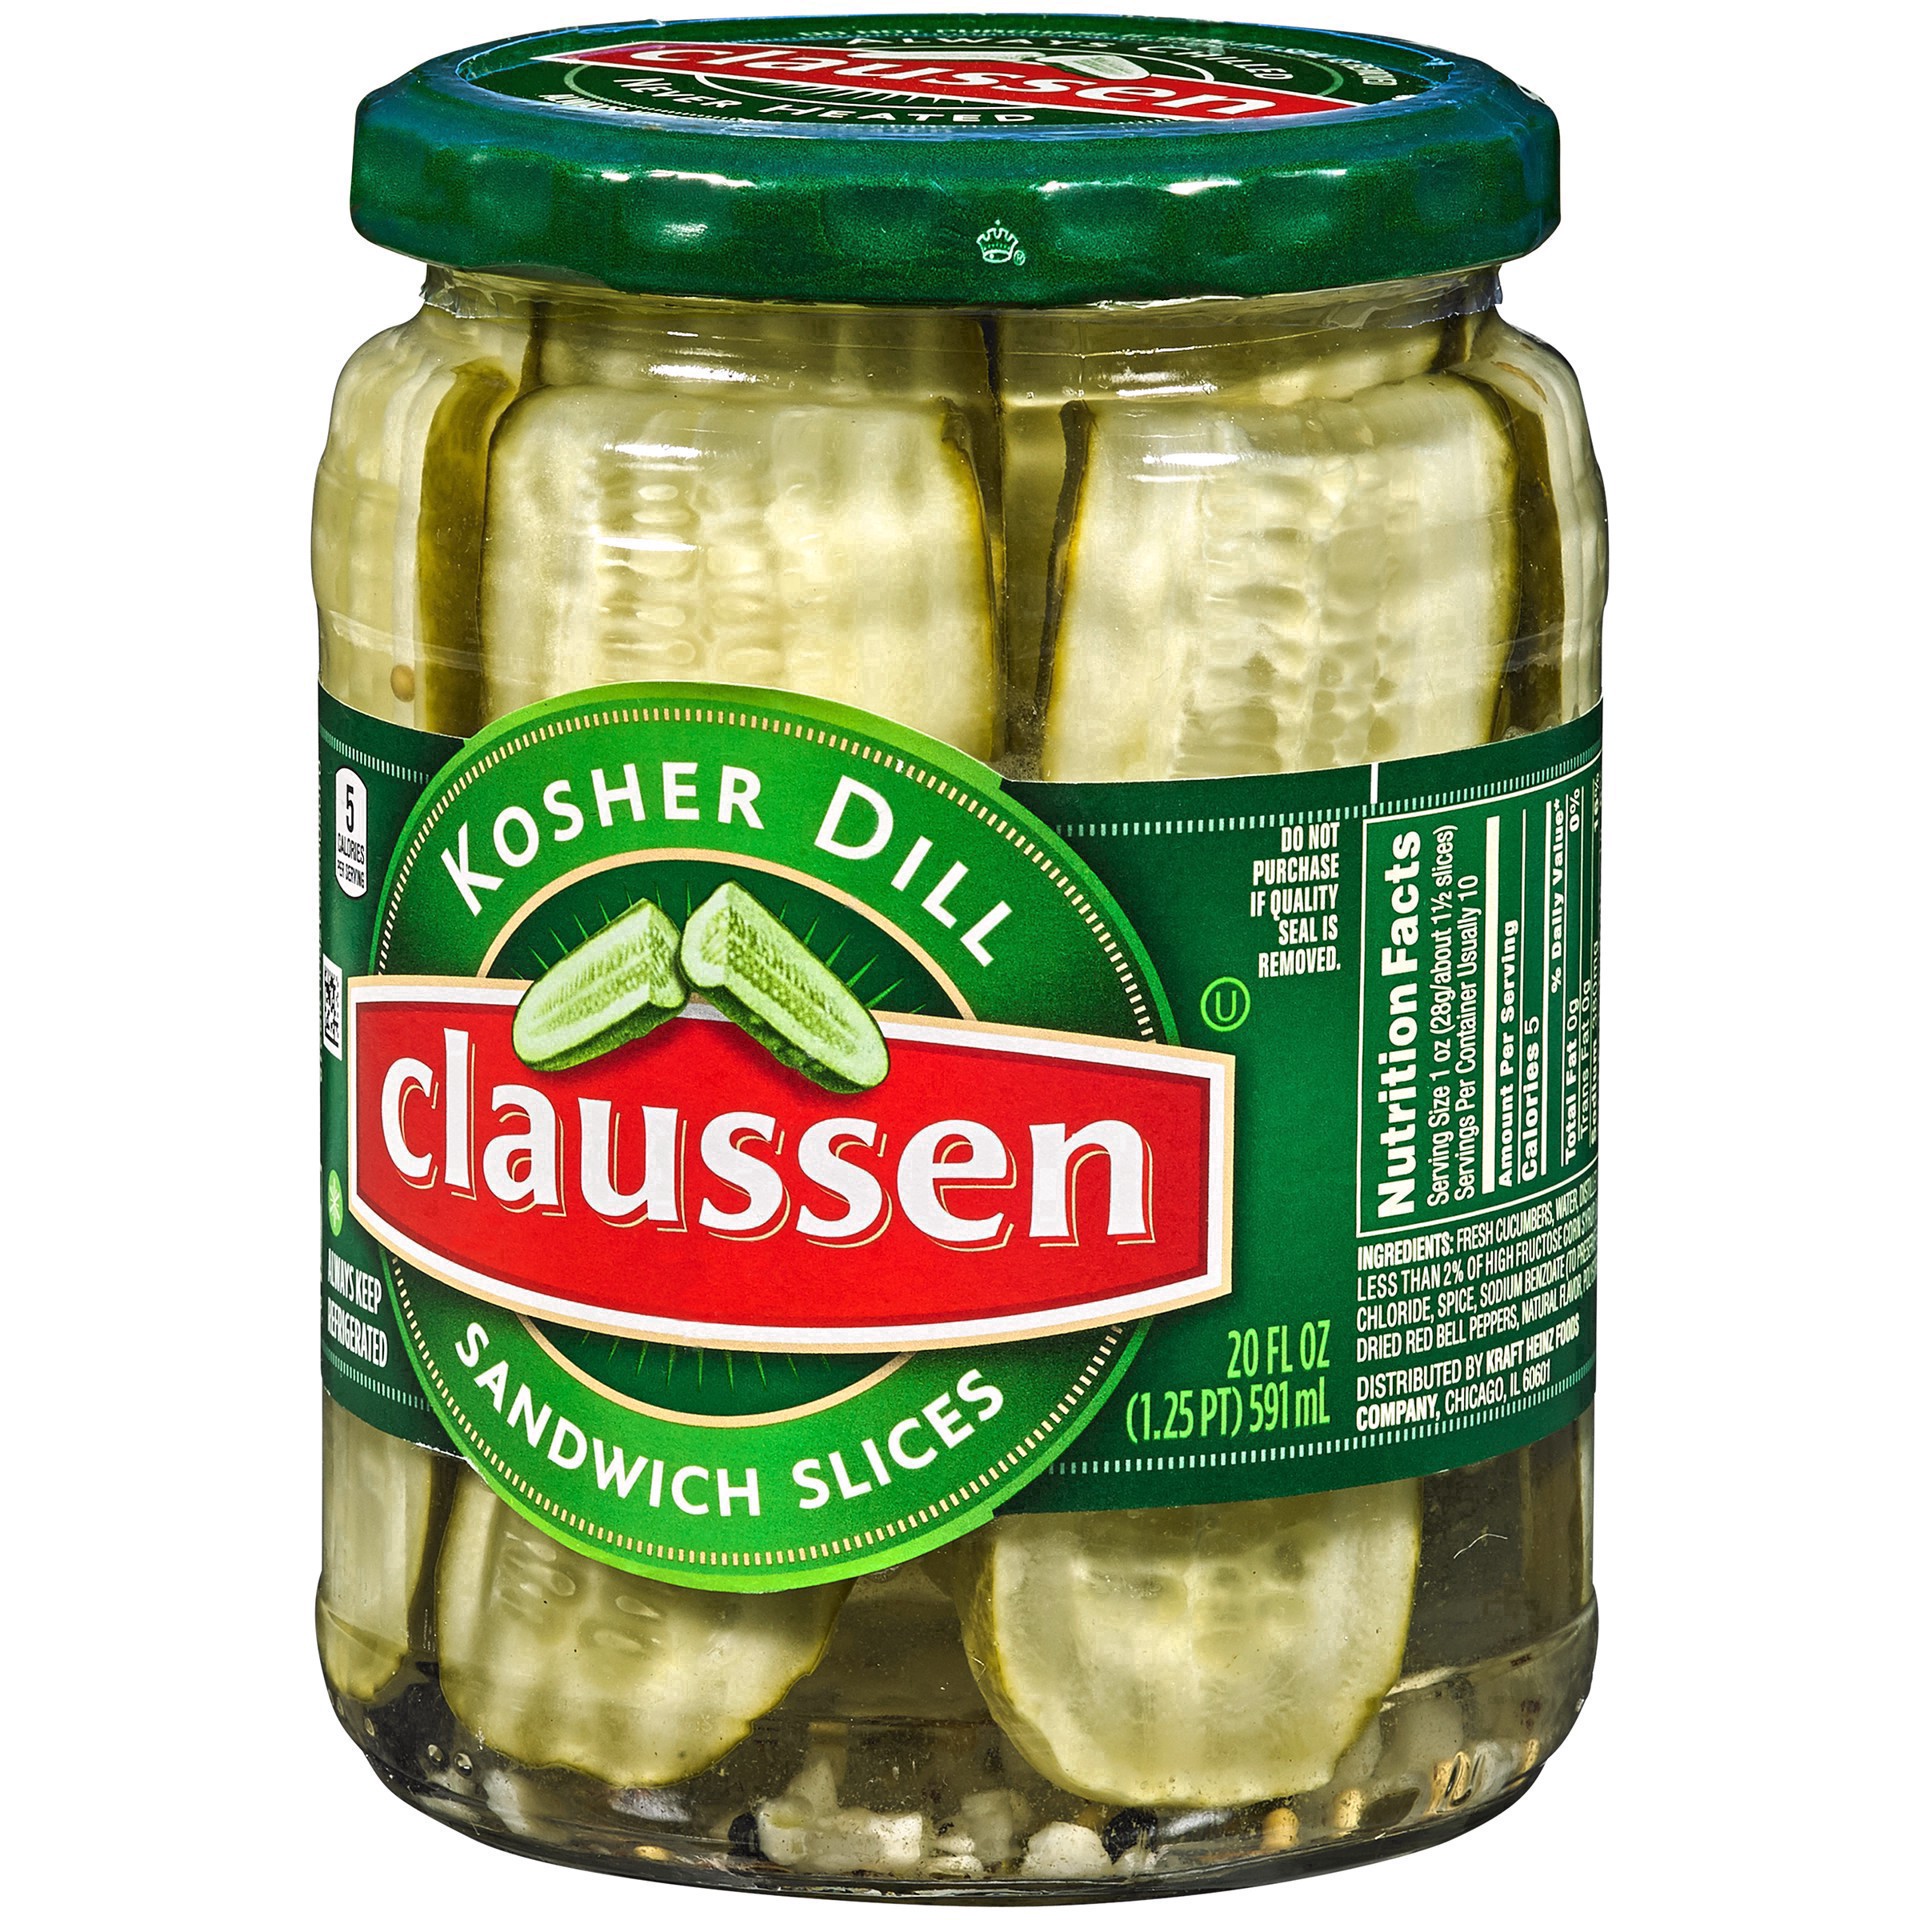 slide 112 of 144, Claussen Kosher Dill Pickle Sandwich Slices, 20 fl. oz. Jar, 20 fl oz